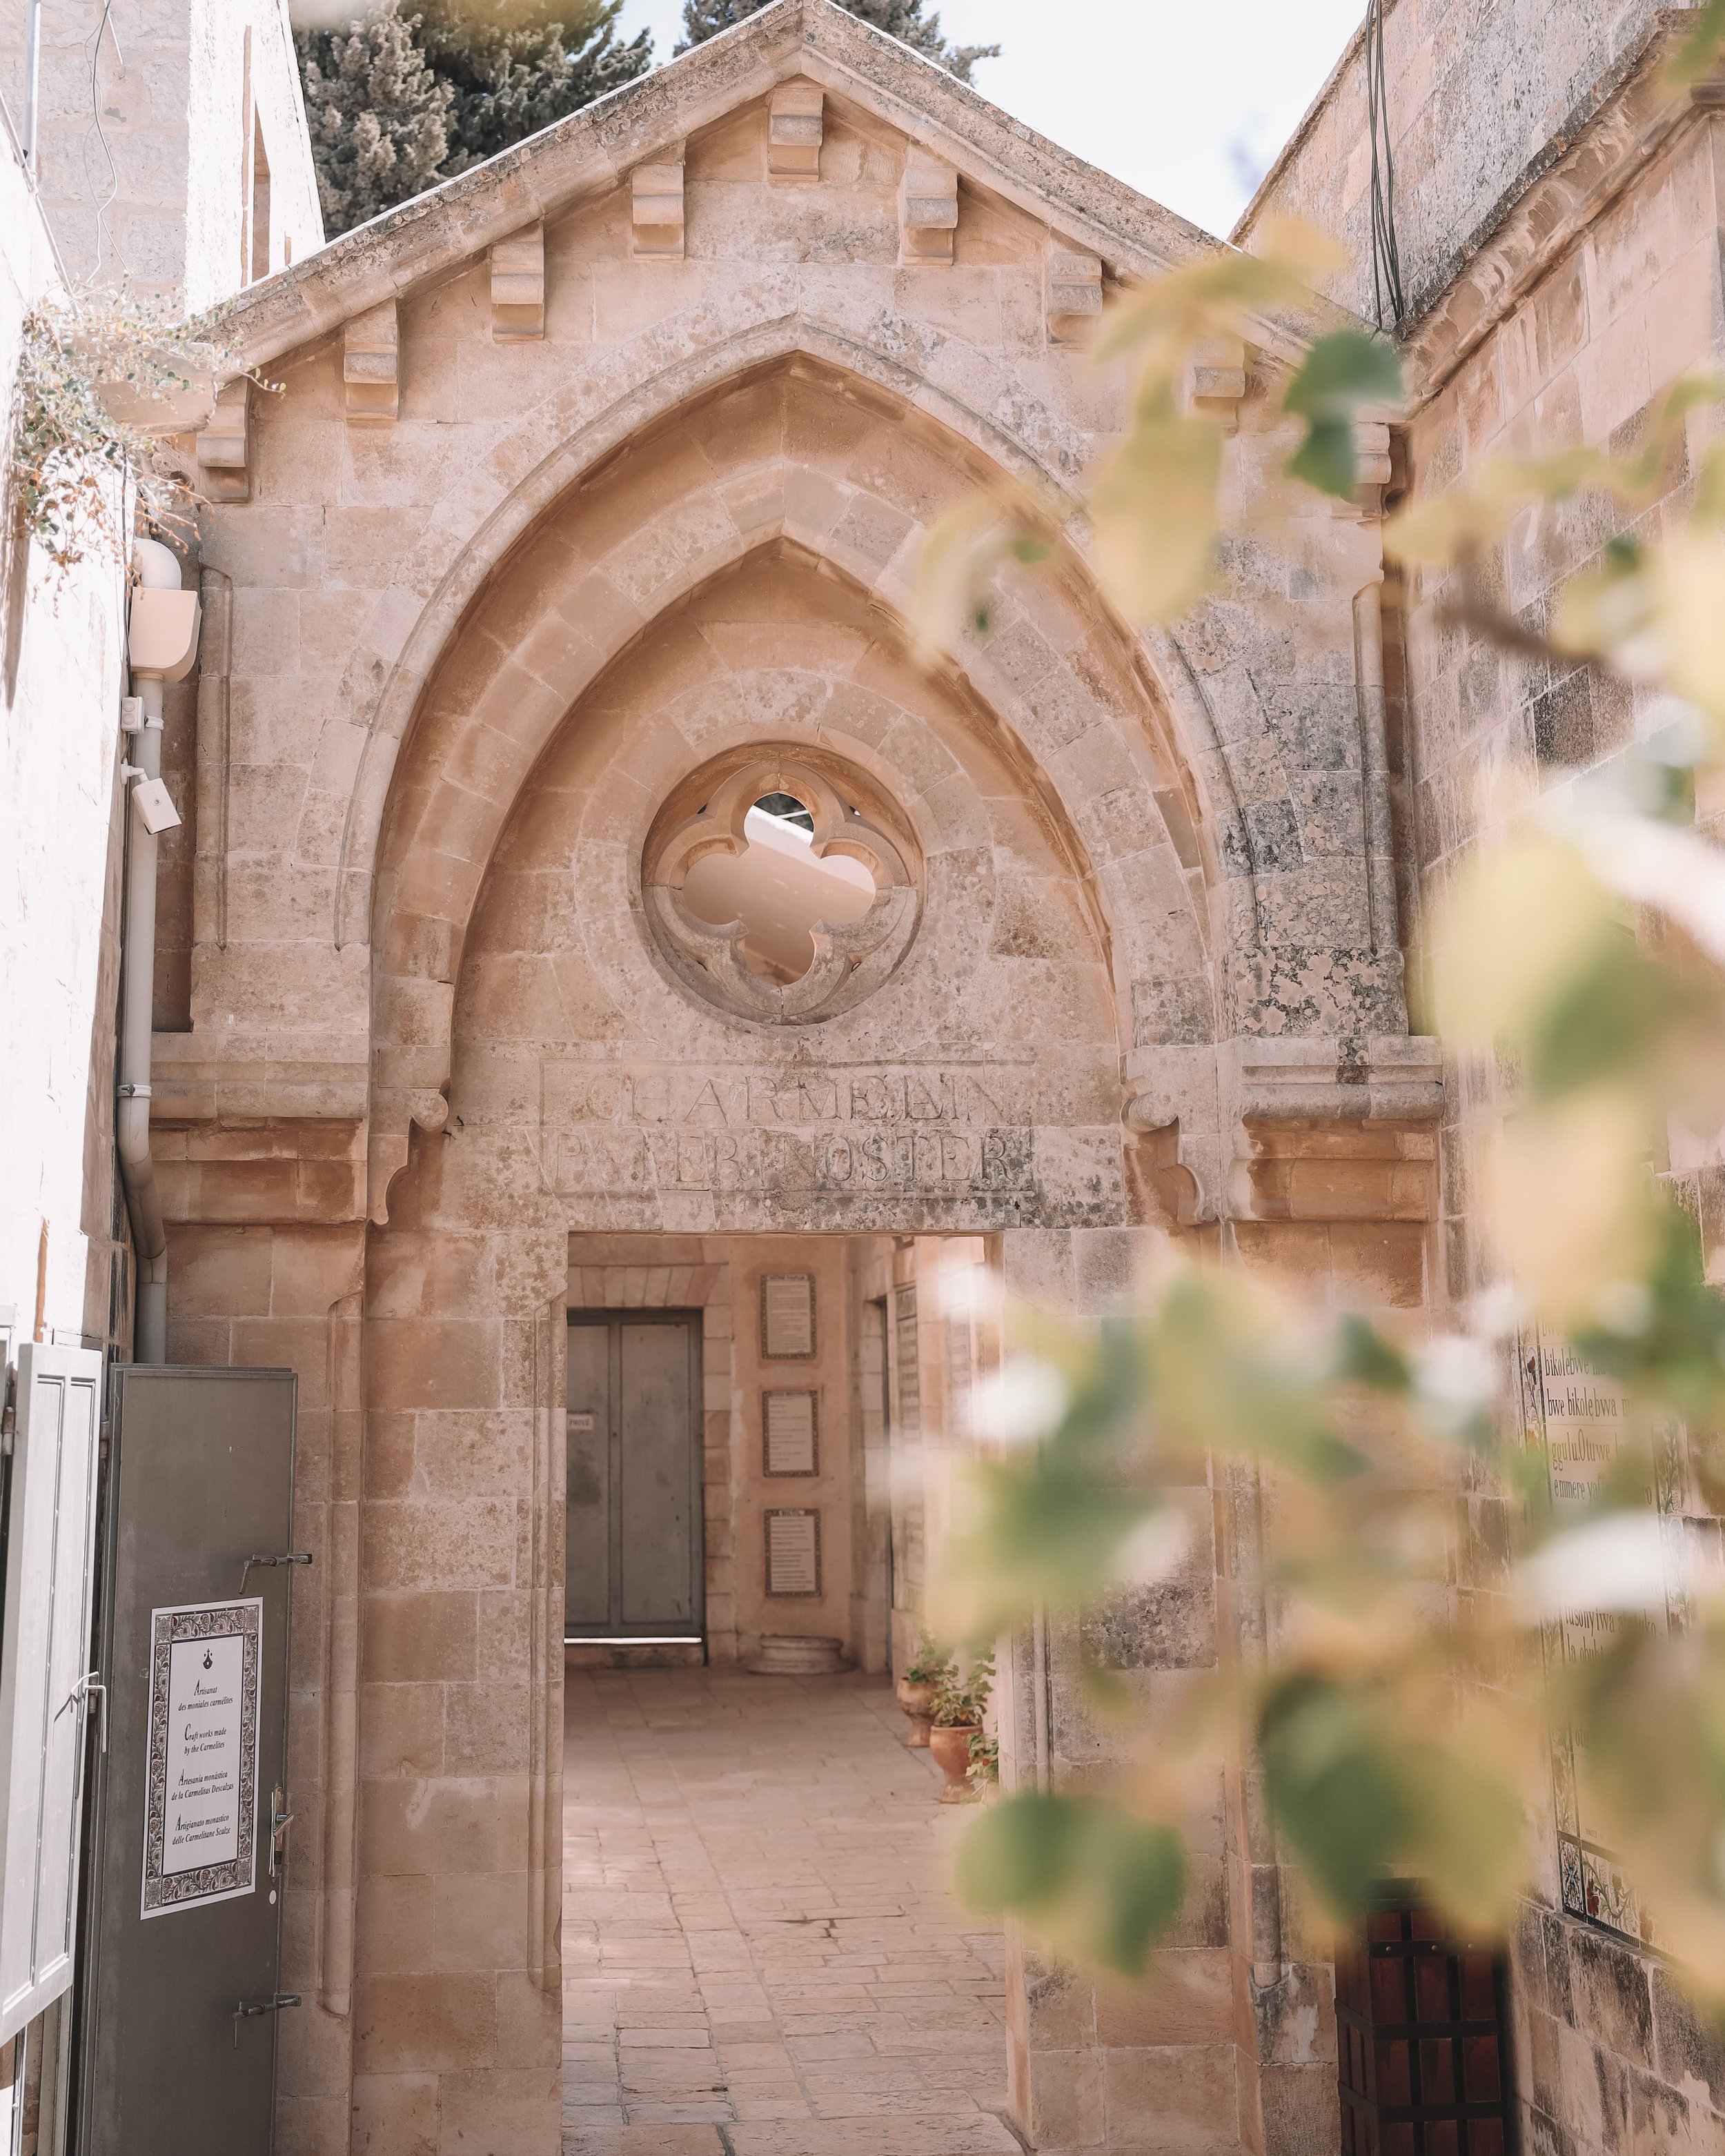 Les arches secrètes de la ville - Vieille Ville - Jérusalem - Israël